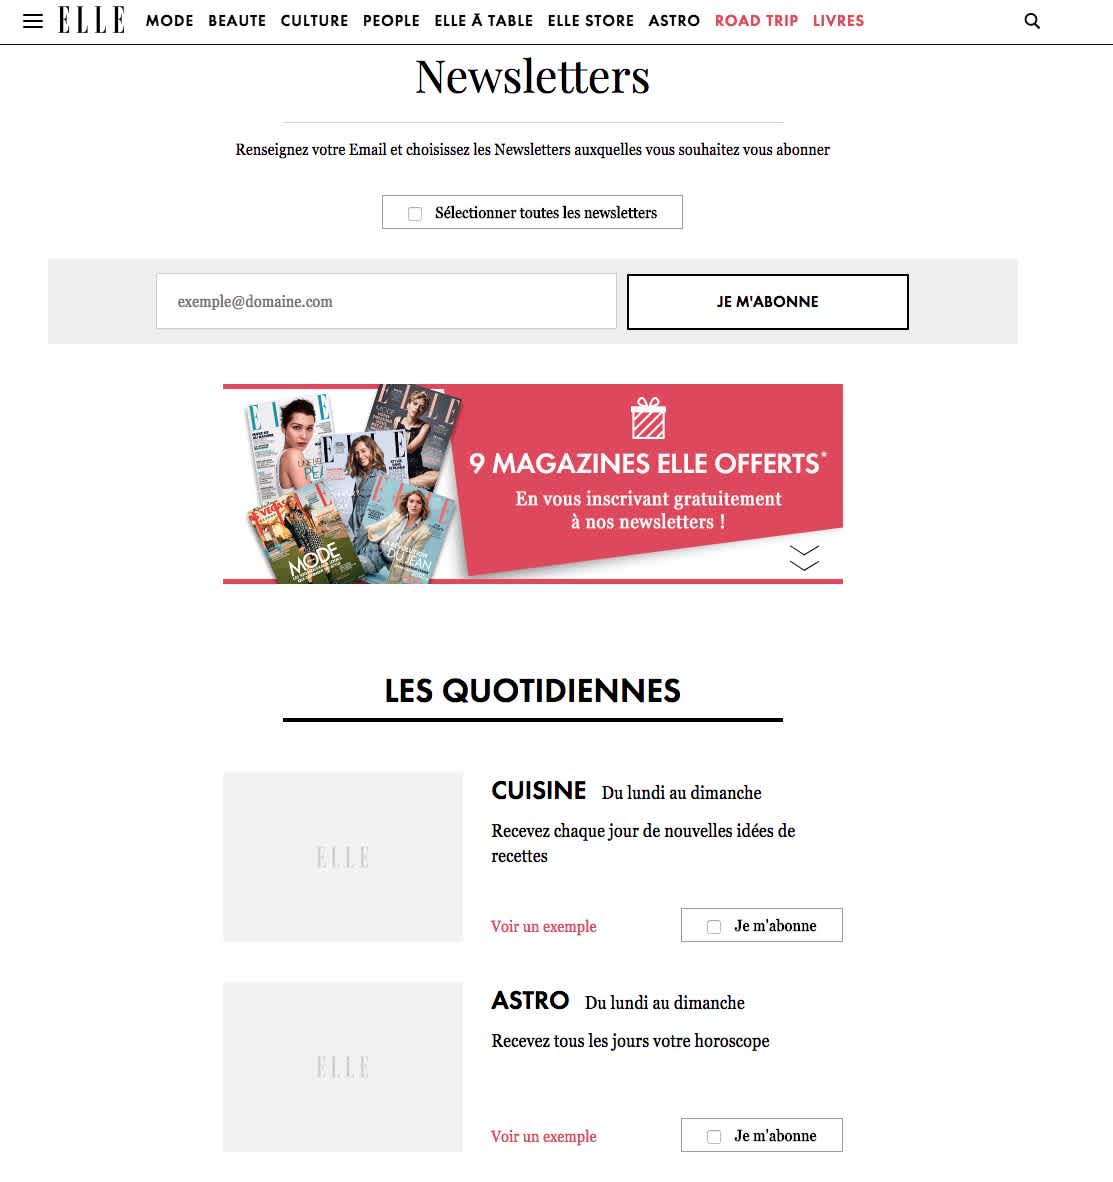 Exemple de landing page pour s'inscrire aux newsletters du magazine Elle